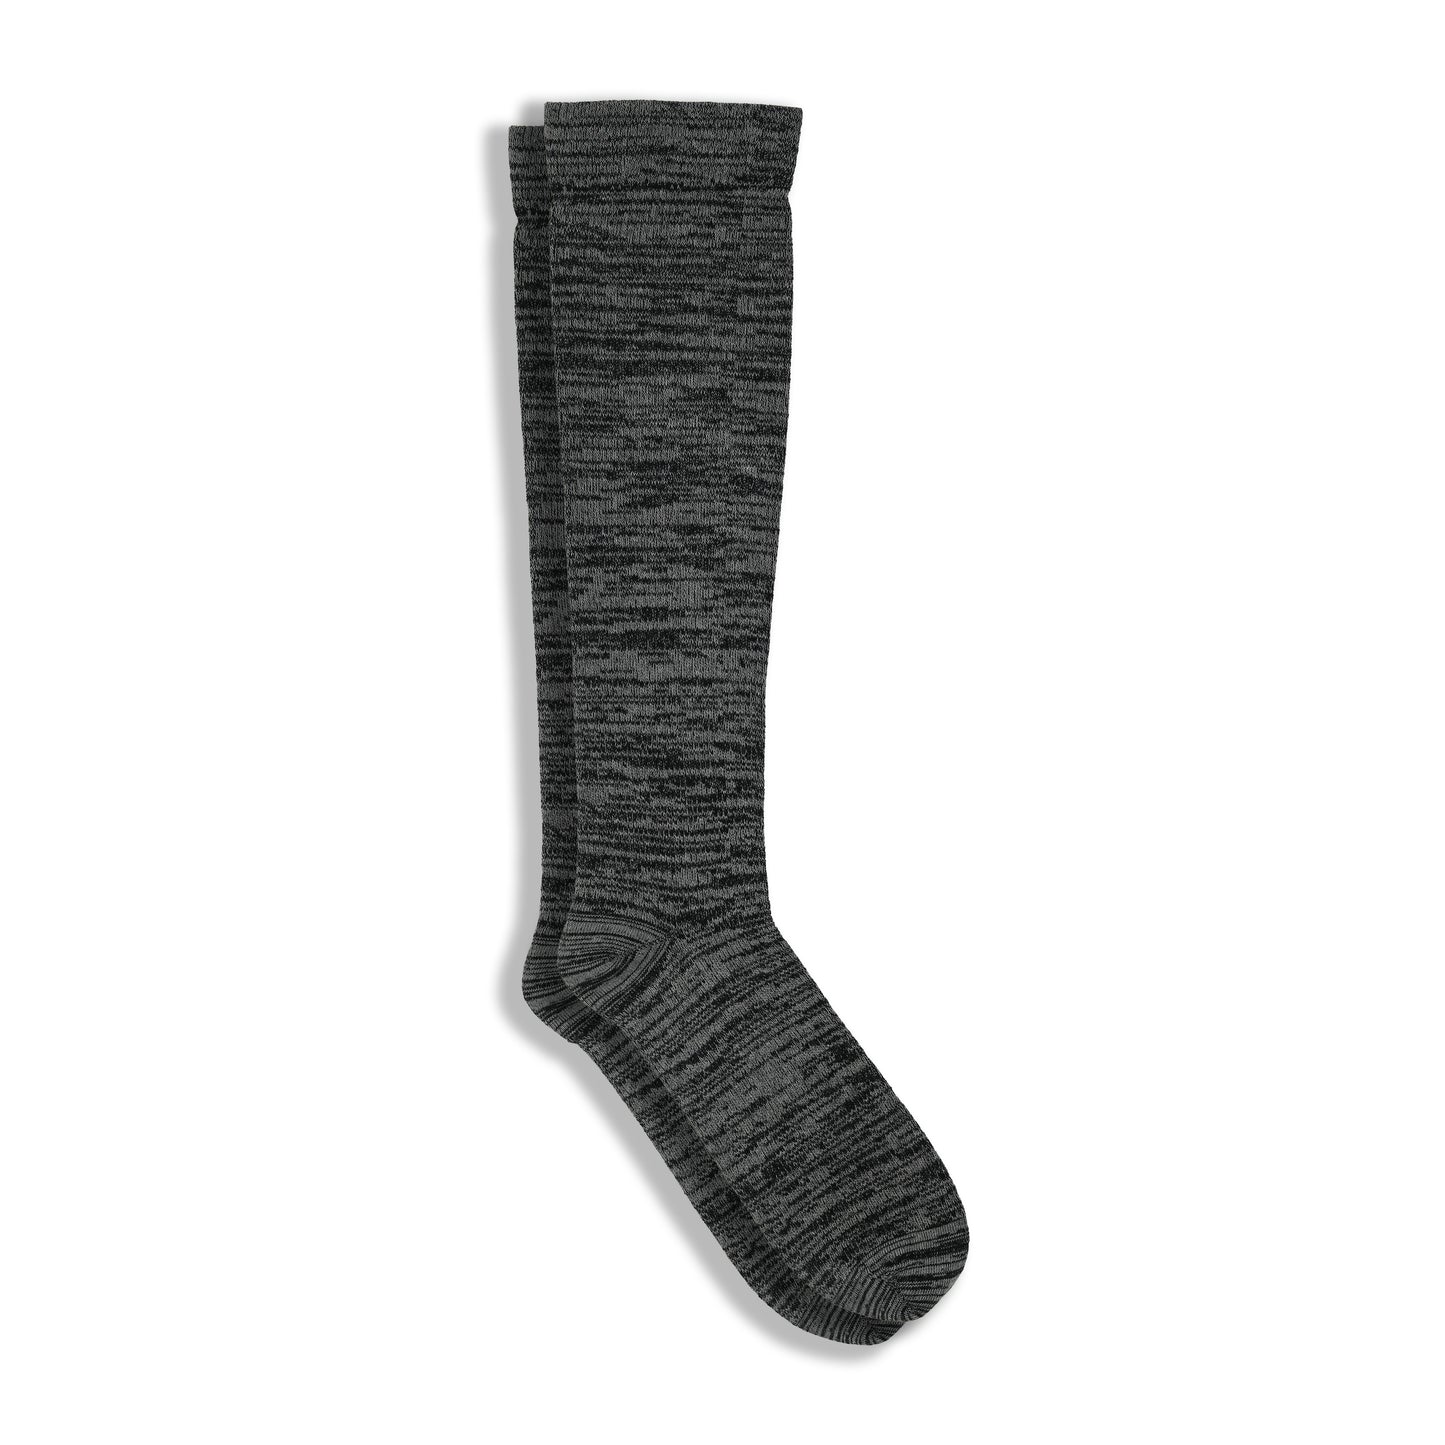 3-Pack Men's Fancy Compression Socks (Space Dye)